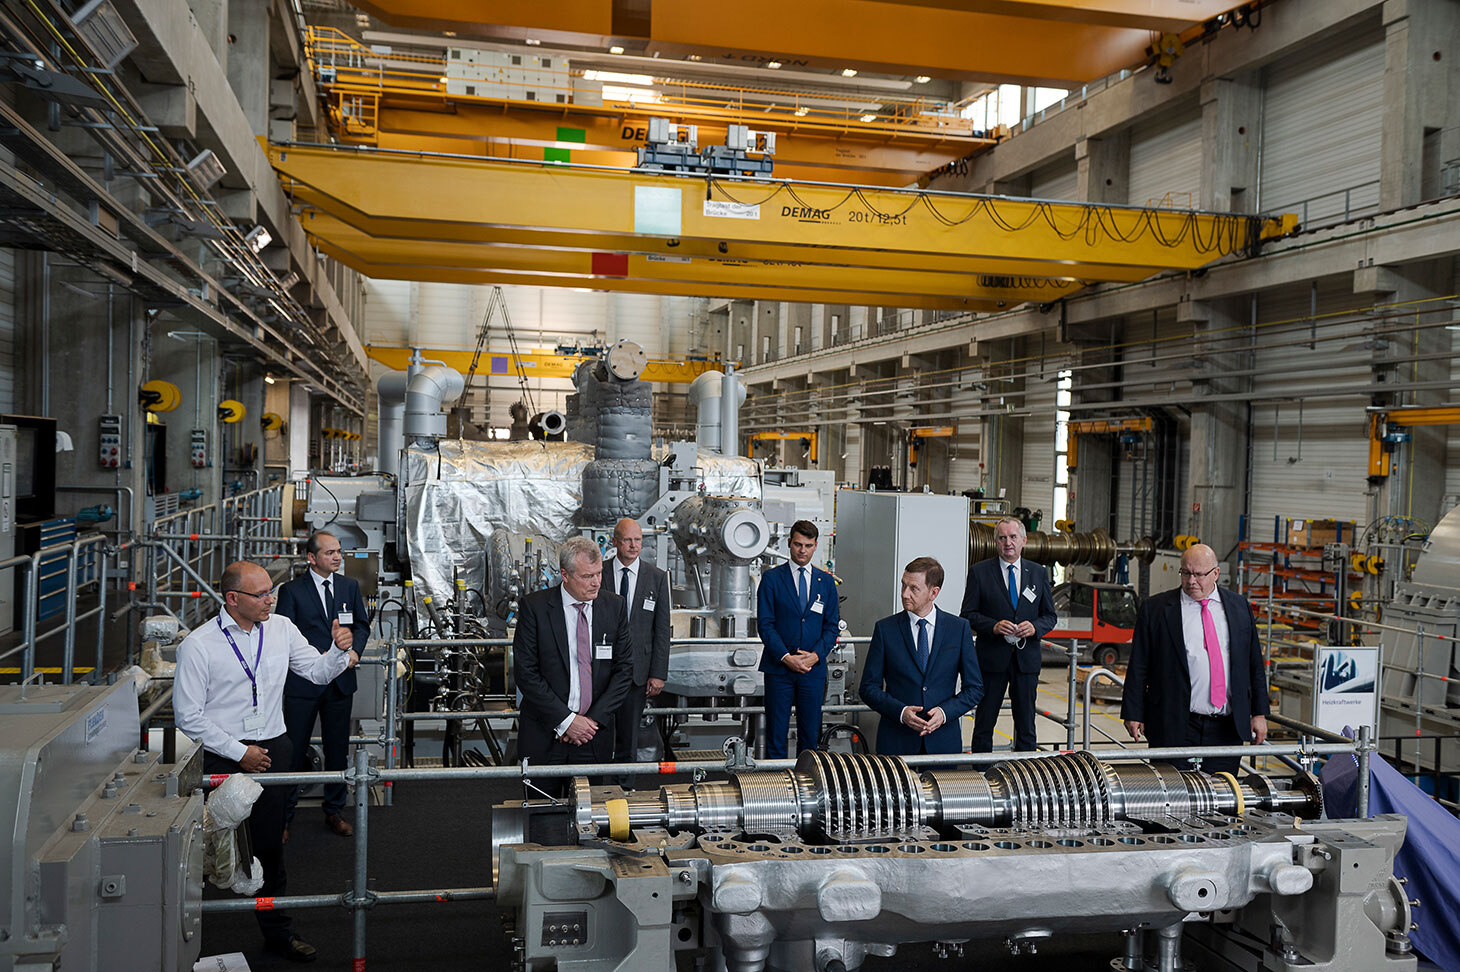 Eine Gruppe von Herren, darunter der sächsiche Ministerpräsident, stehen in einer Halle inmitten von Industriemaschinen.